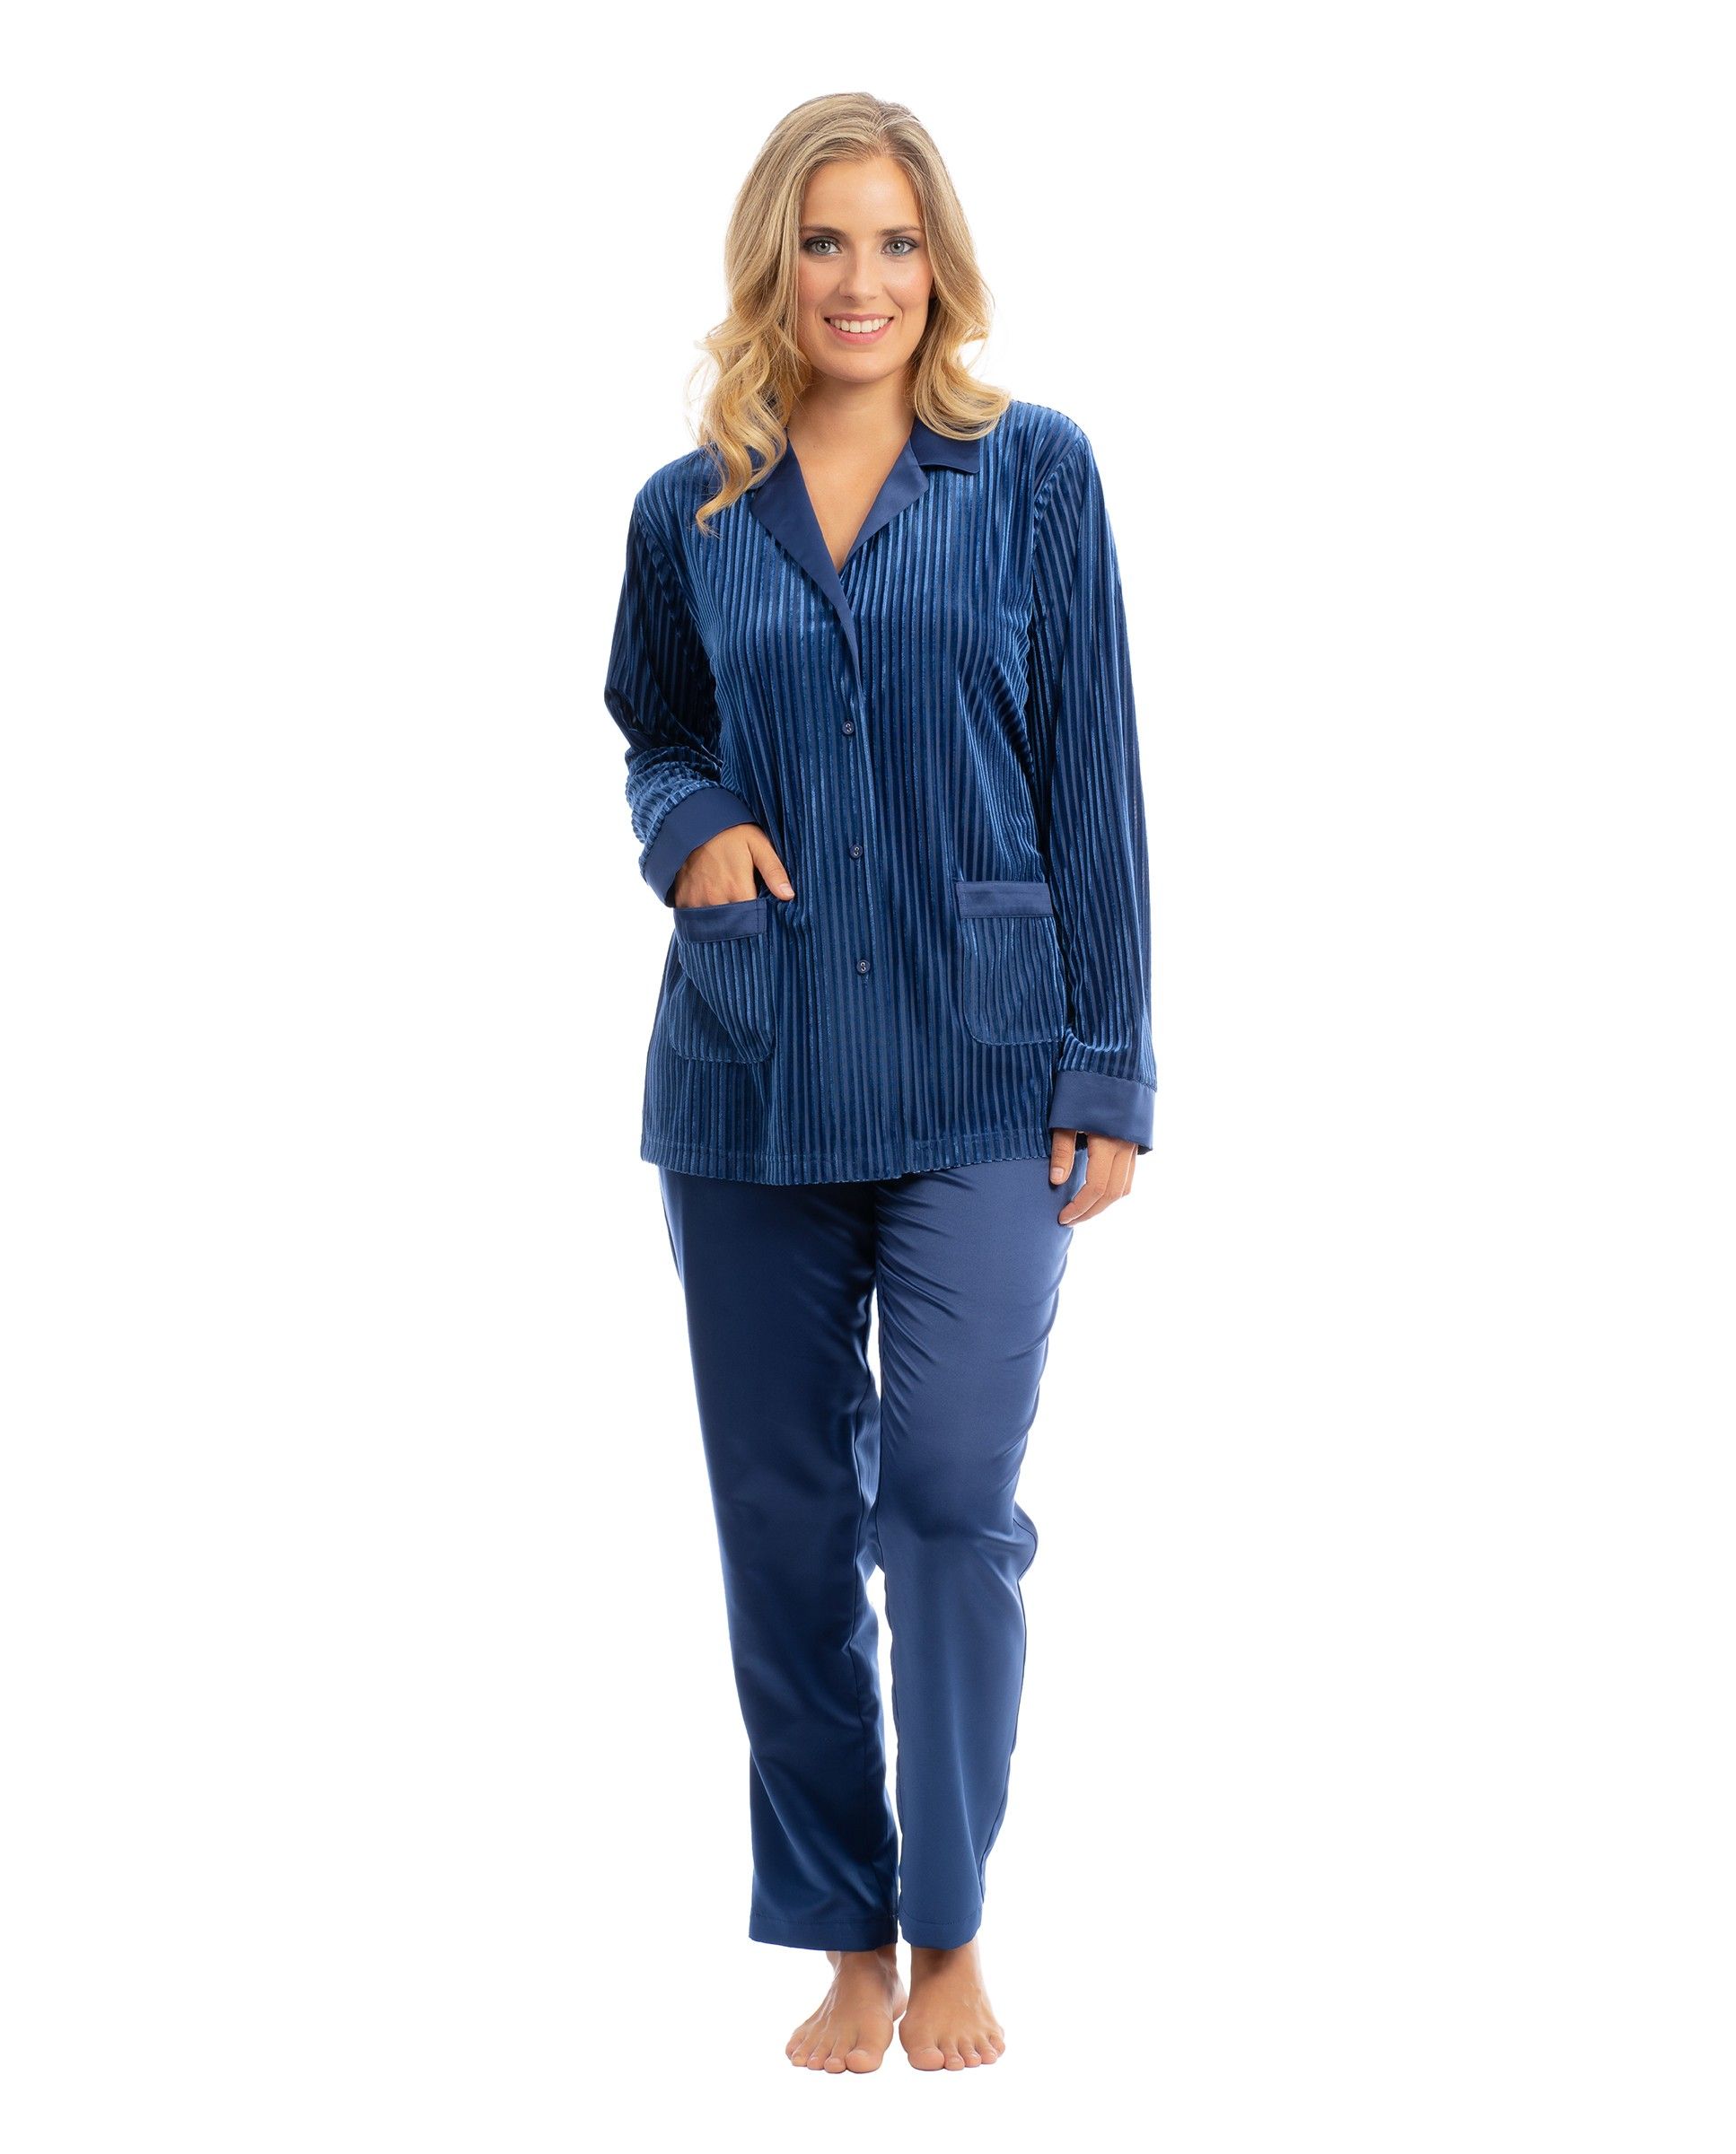 Women's long pyjamas in blue velvet, devoured